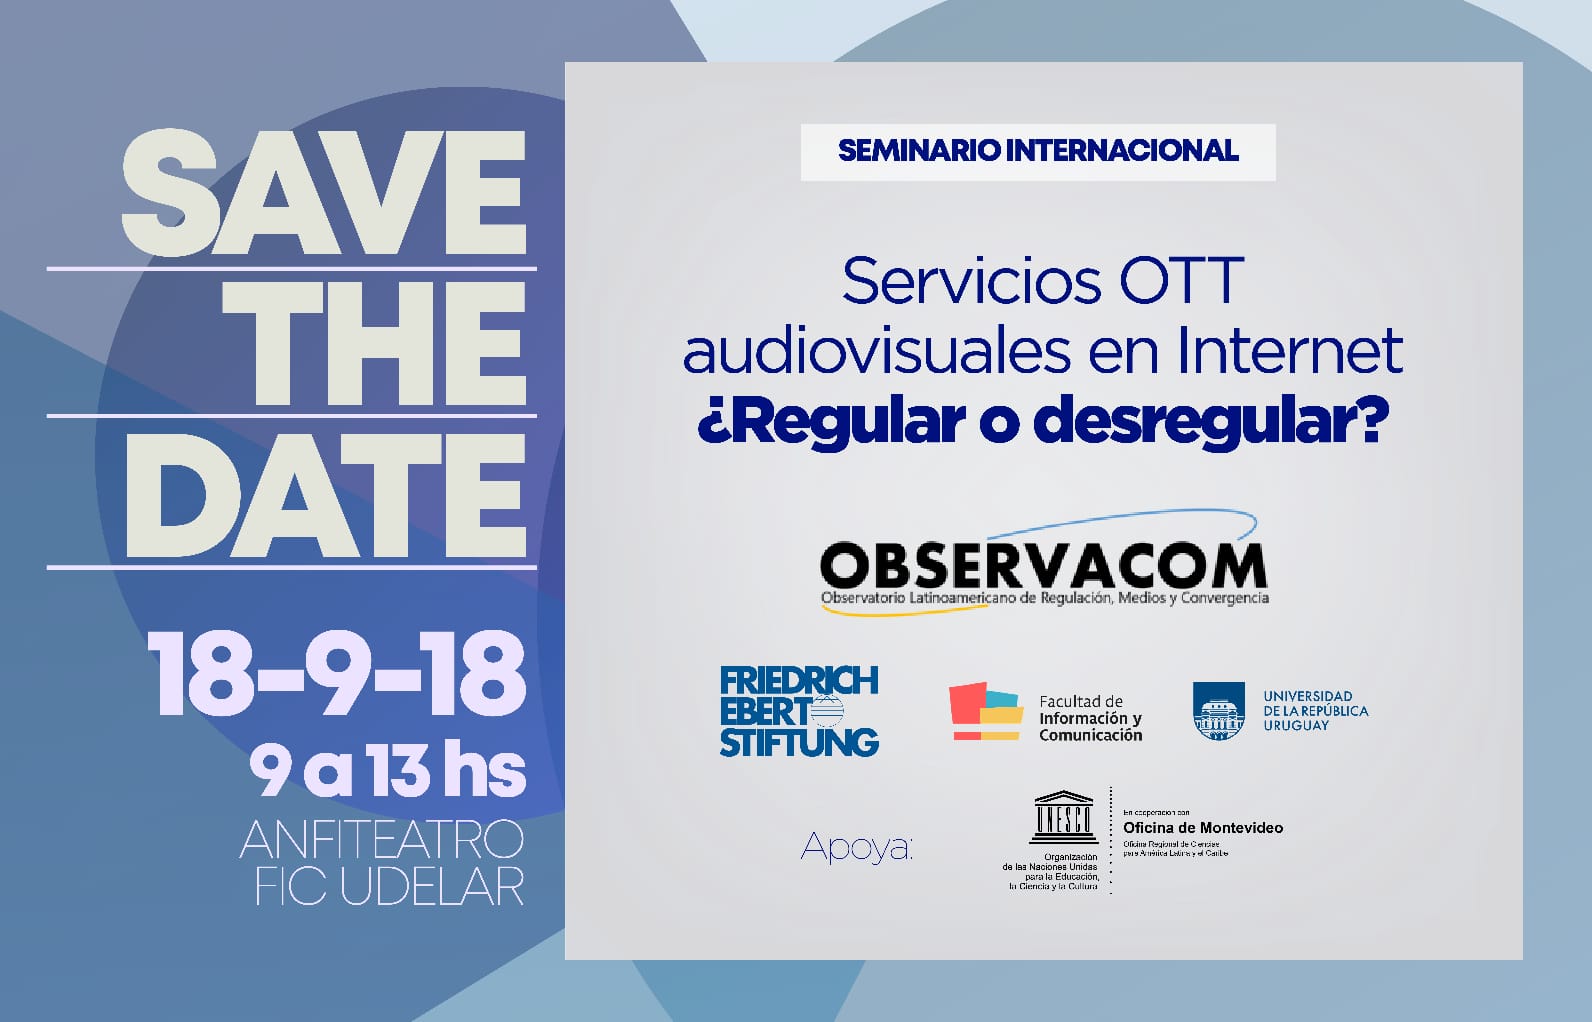 Invitación al seminario "Servicios OTT audiovisuales en internet: ¿Regular o desregular?"